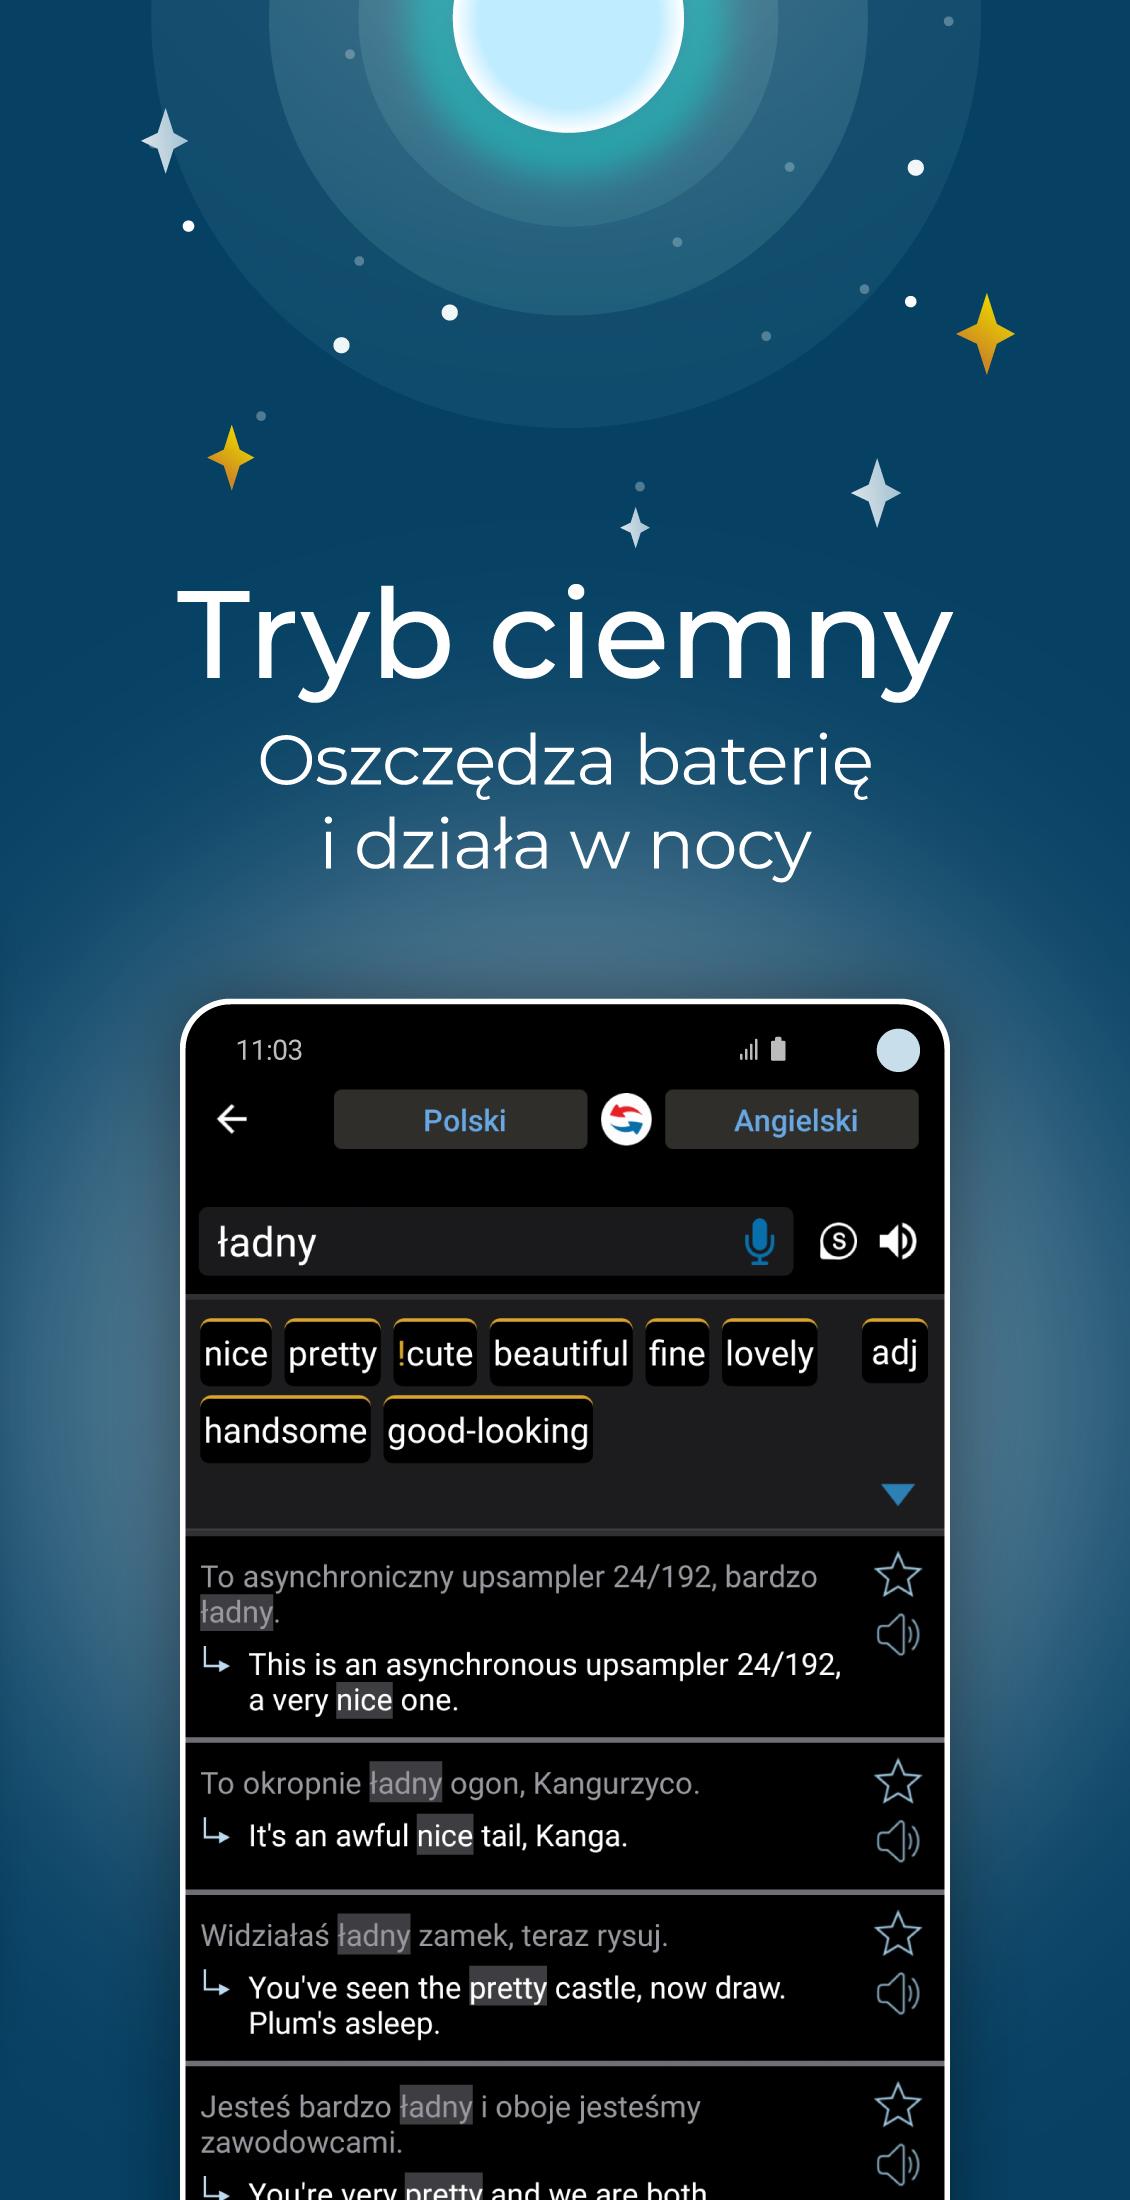 Reverso słownik i tłumaczenie for Android - APK Download